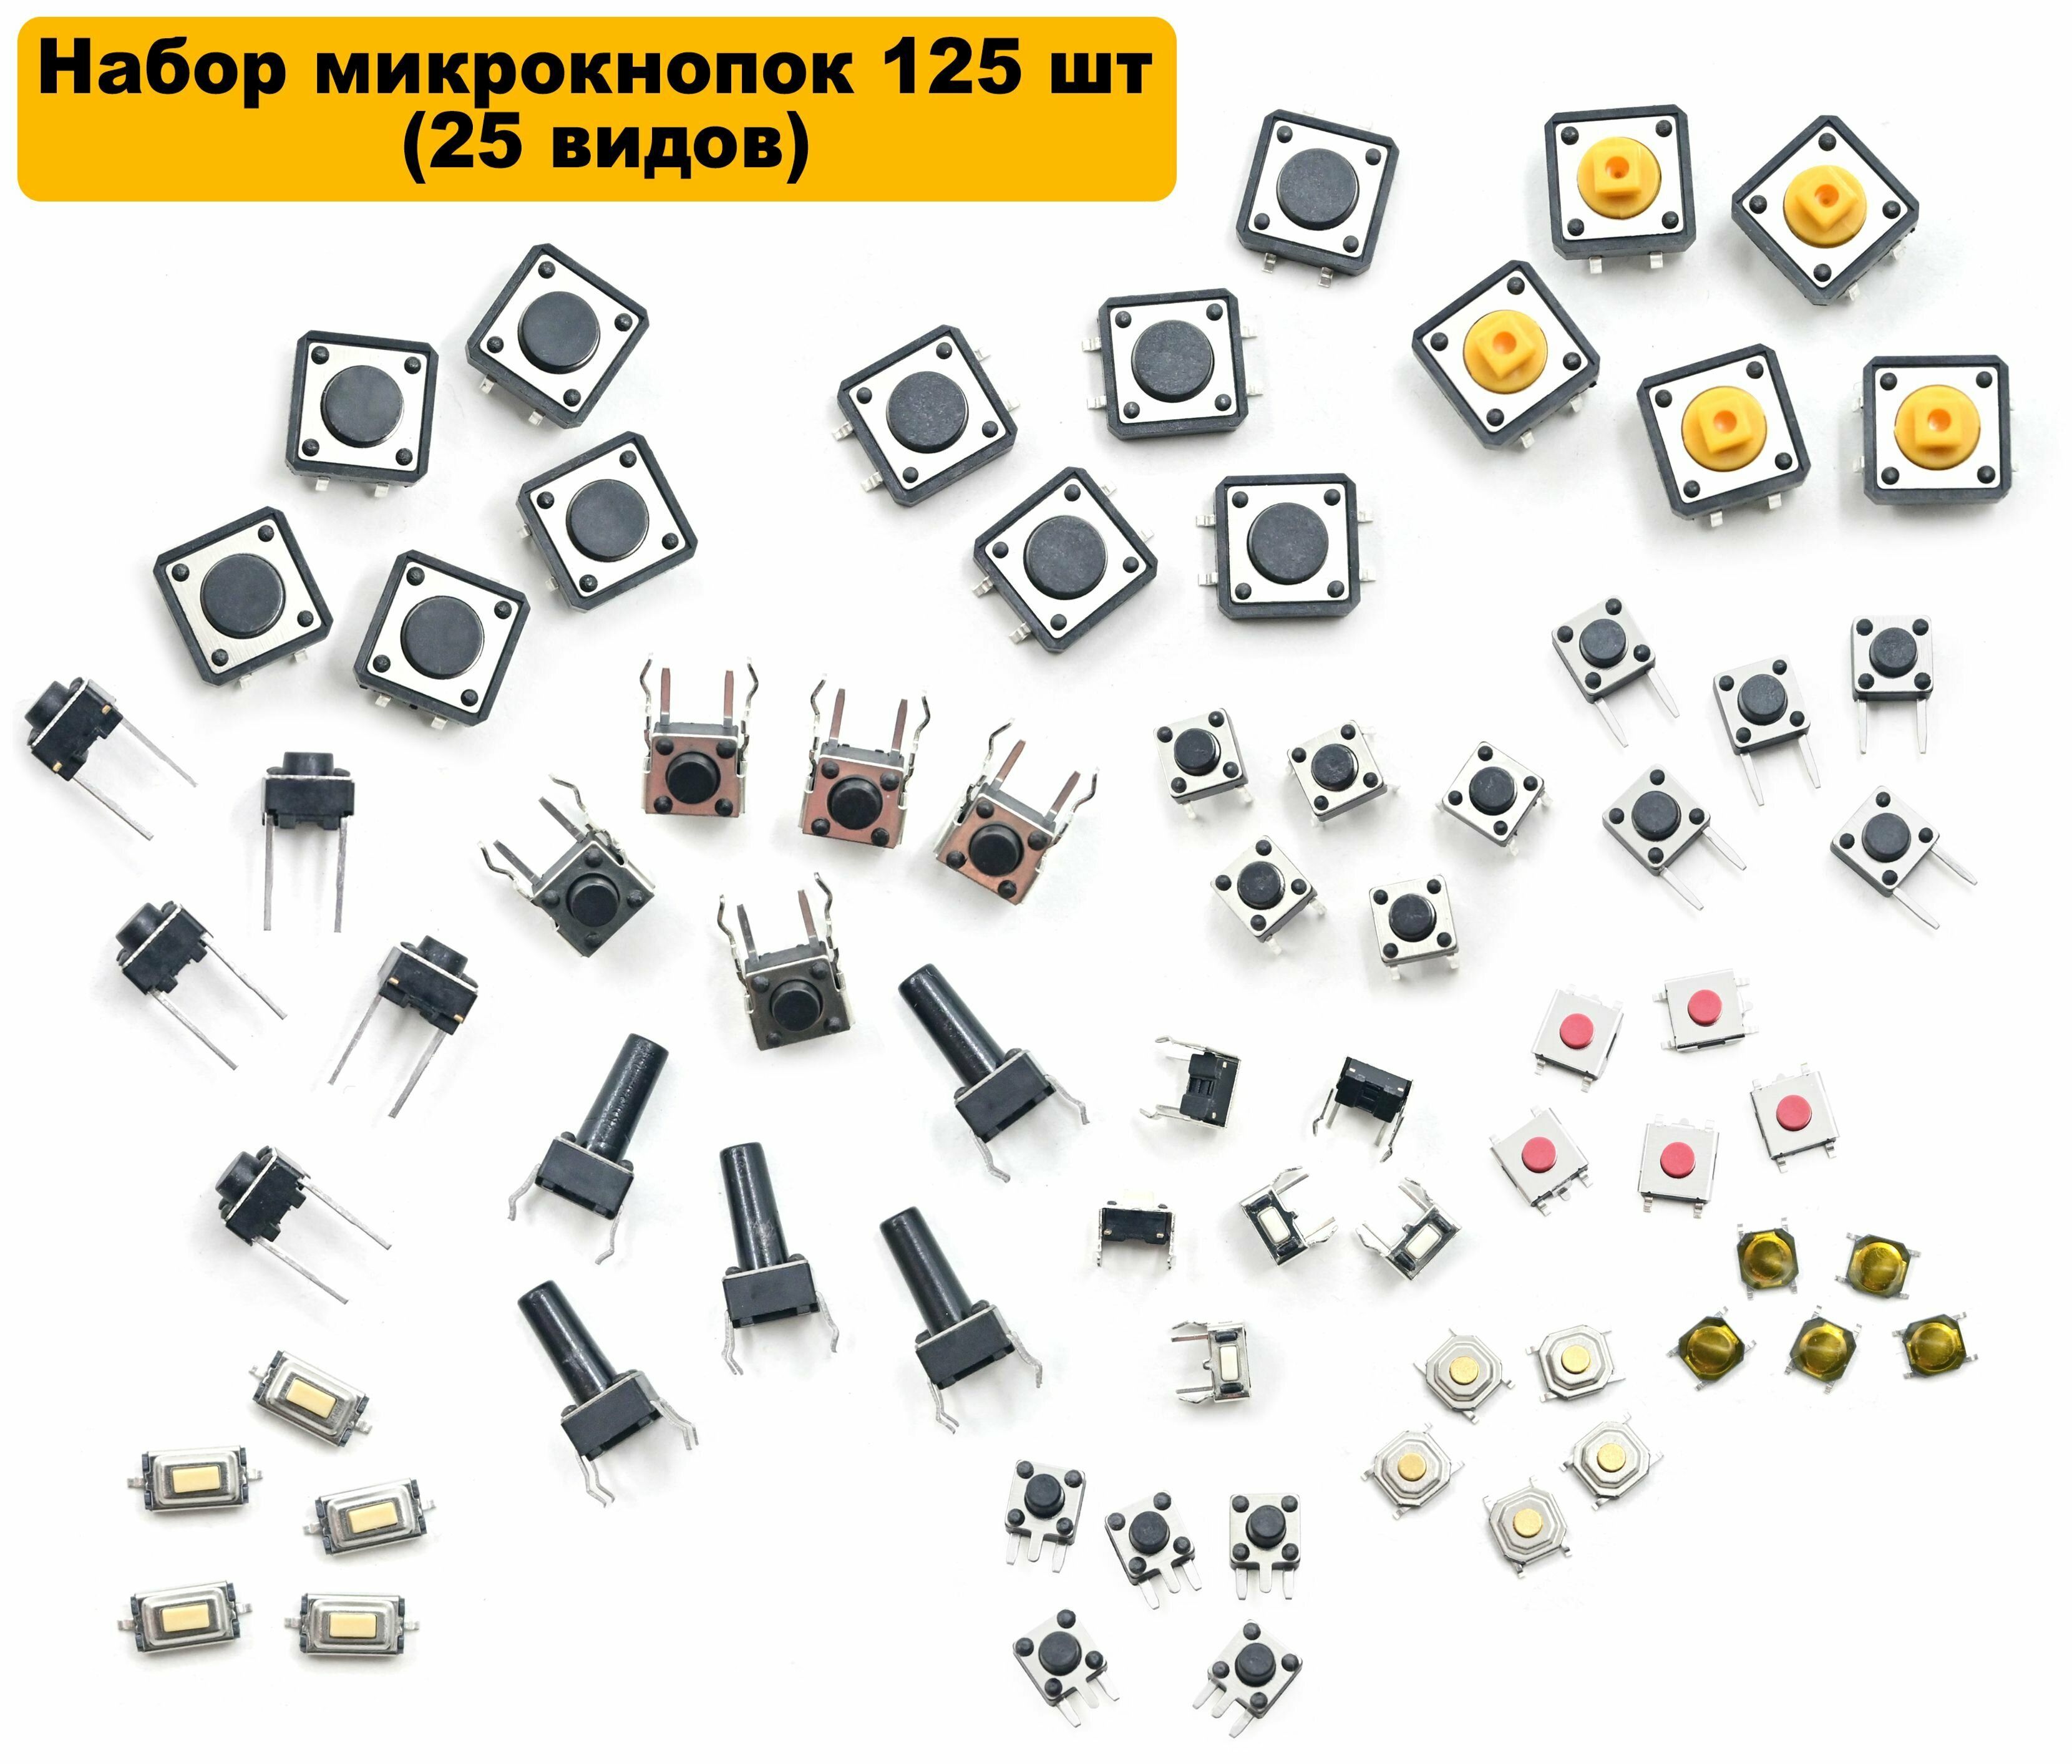 Набор микрокнопок 125 шт (25 видов по 5 штук)/Кнопочные переключатели по 5 штук/Сенсорные переключатели для ардуино для электрических устройств